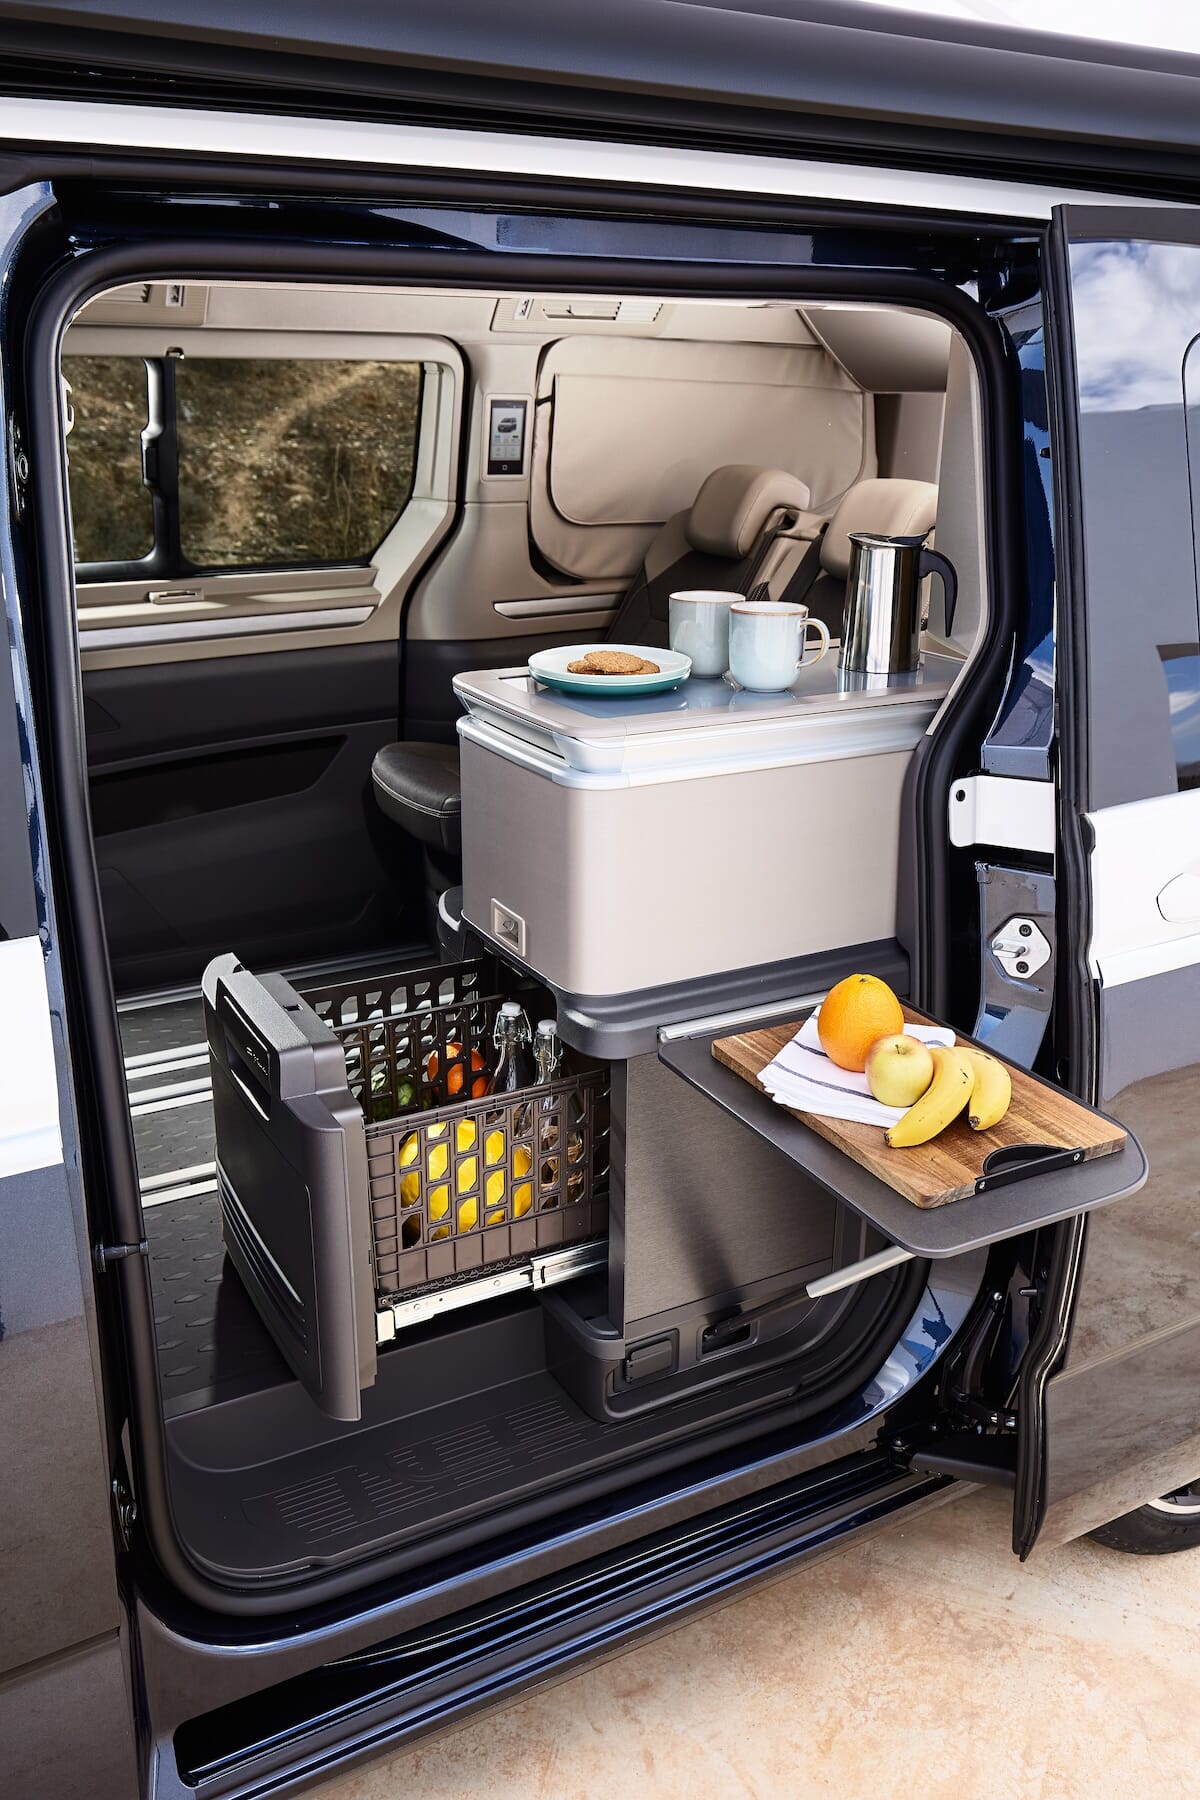 Küchenbereich des neuen Volkswagen California mit offener Schiebetür, zeigt einen Kühlschrank, ein Schneidebrett mit Obst und einen Tisch mit Tassen und Keksen.